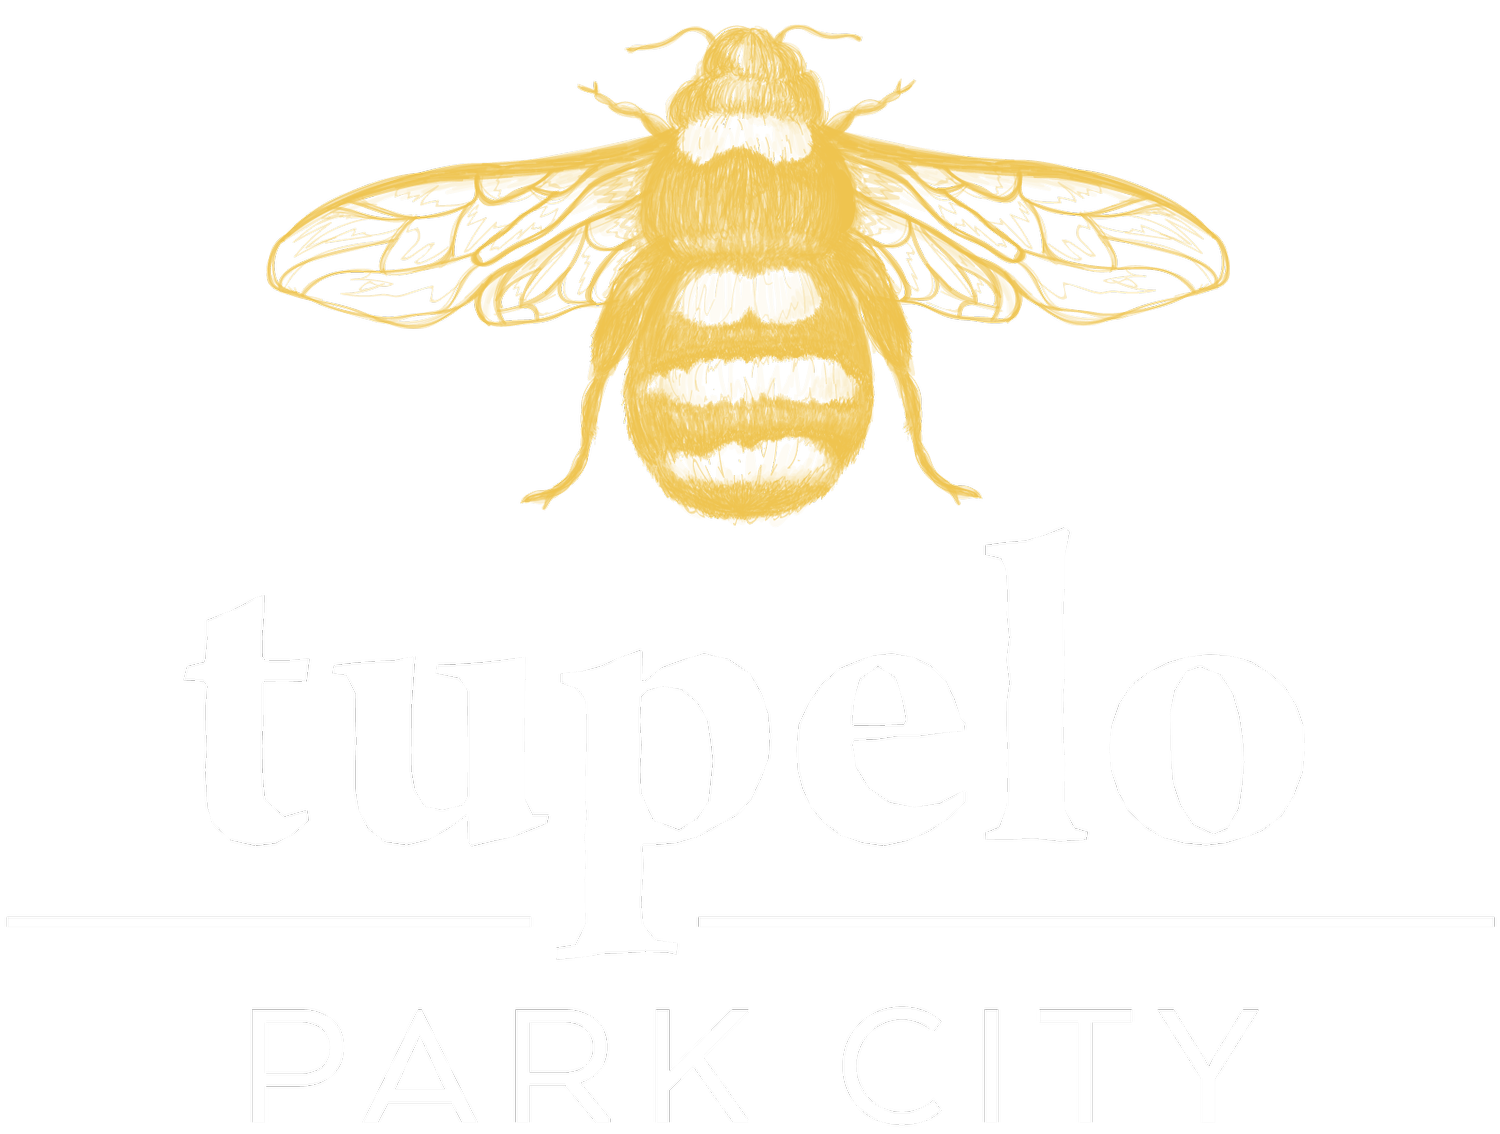 Tupelo Park City